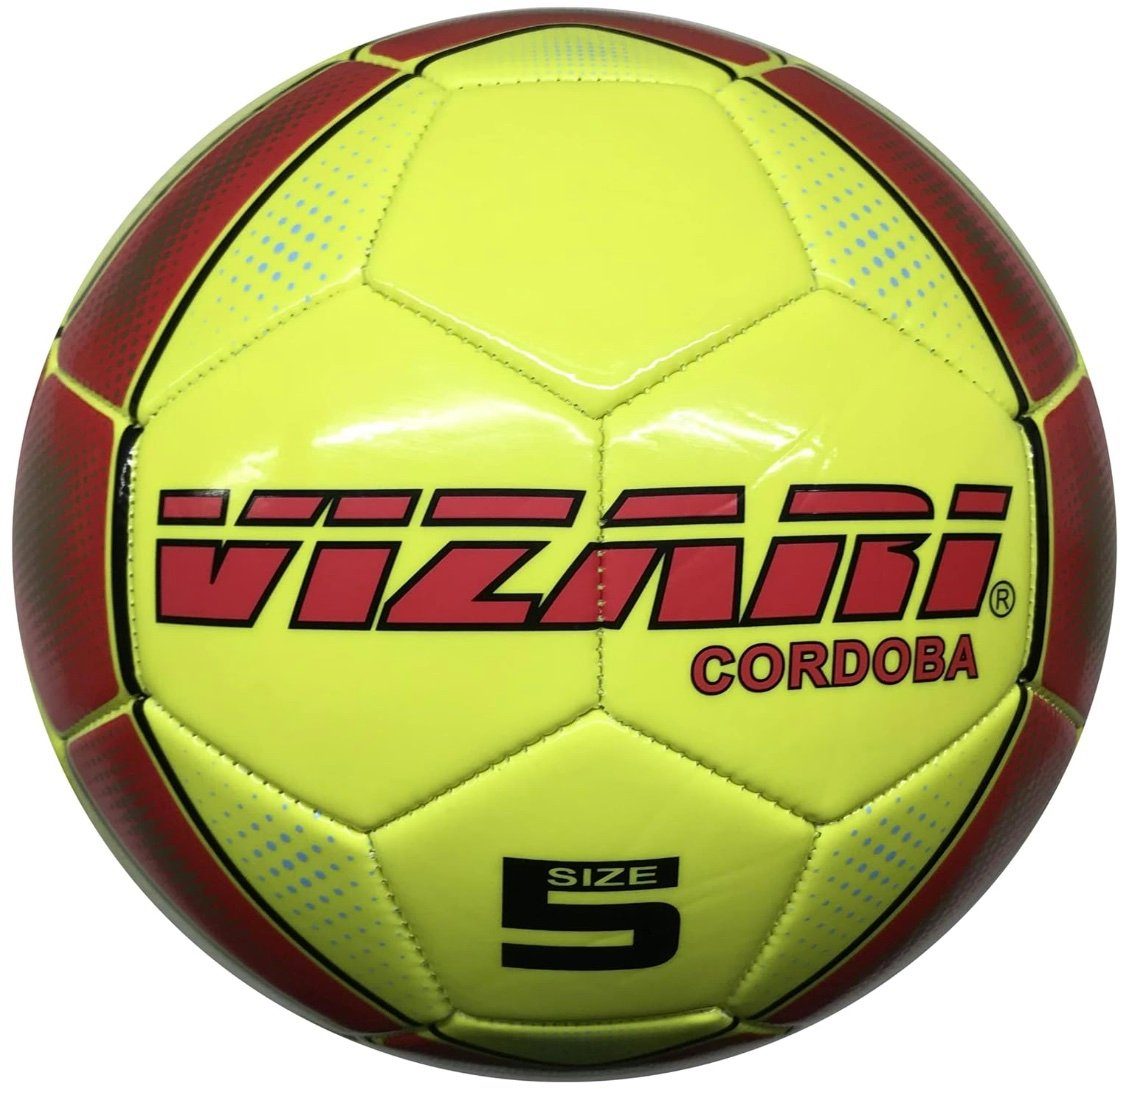 Neue Artikel im Ausland erhältlich! VIZARI Fußball CORDOBA NEO/YEL Ball 3